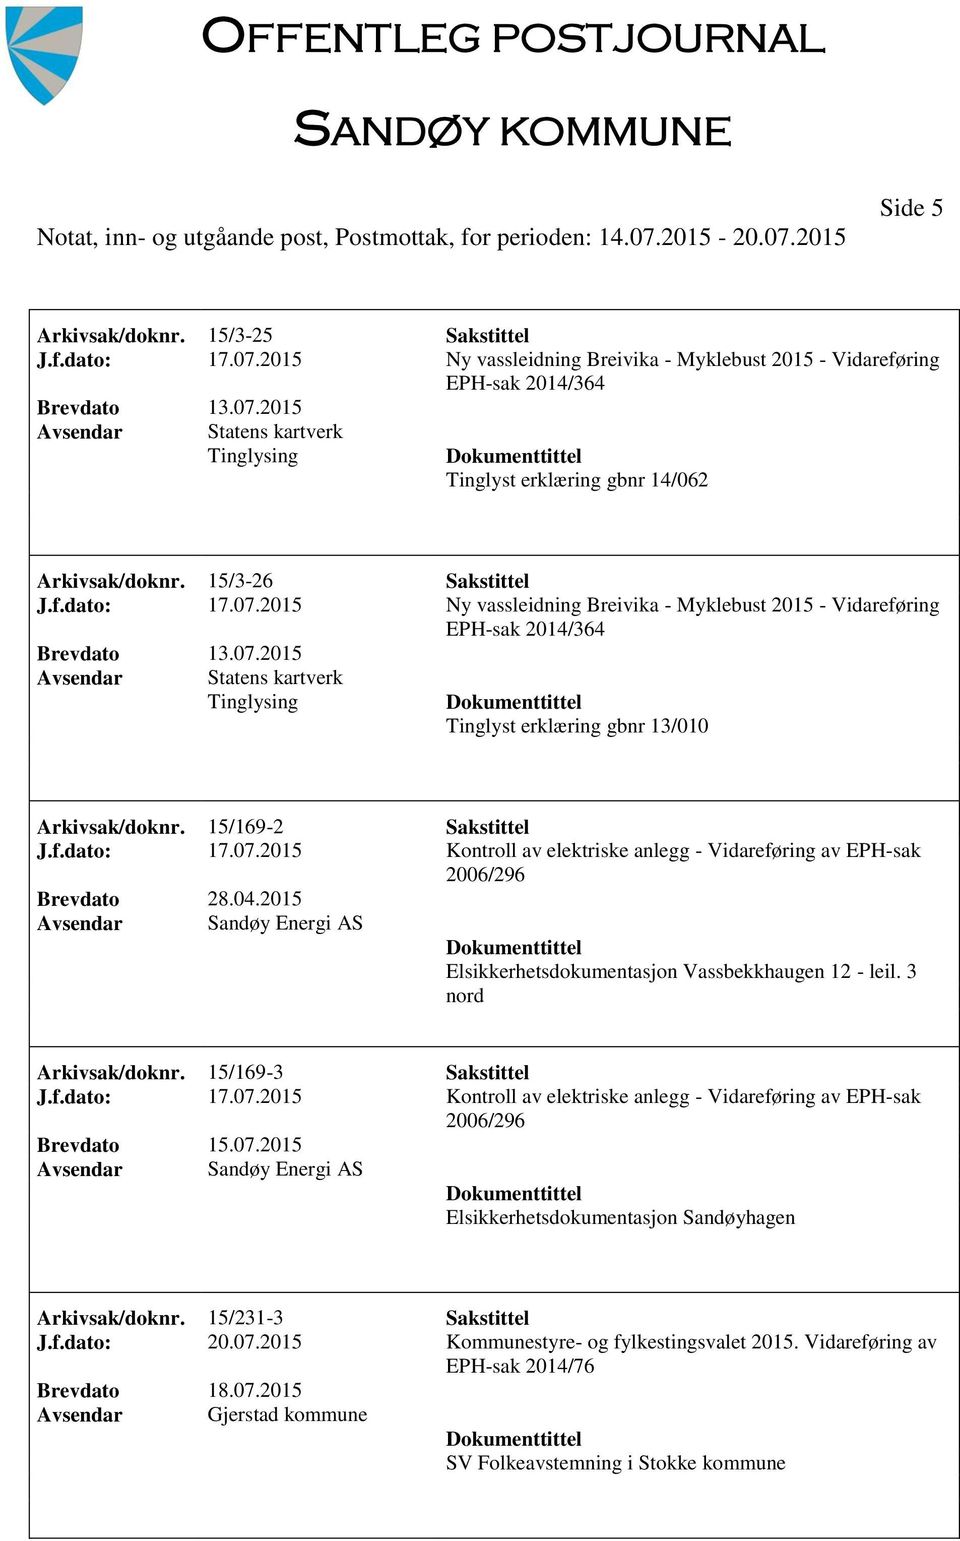 04.2015 Sandøy Energi AS Elsikkerhetsdokumentasjon Vassbekkhaugen 12 - leil. 3 nord Arkivsak/doknr. 15/169-3 Sakstittel J.f.dato: 17.07.